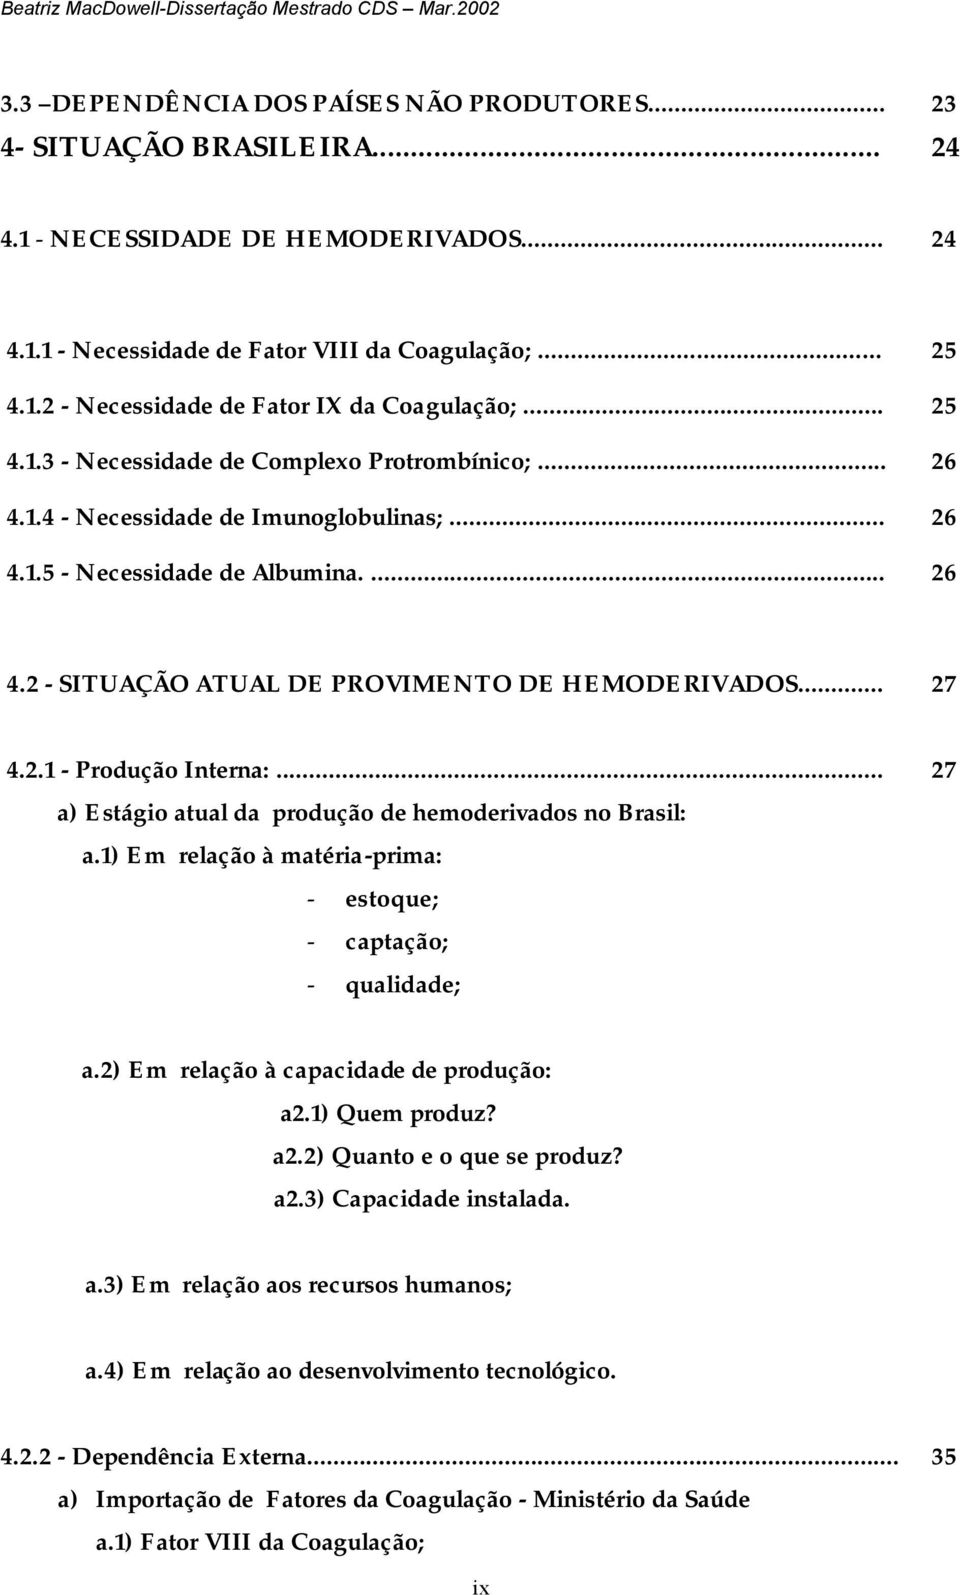 .. 27 4.2.1 - Produção Interna:... 27 a) Estágio atual da produção de hemoderivados no Brasil: a.1) Em relação à matéria-prima: - estoque; - captação; - qualidade; a.